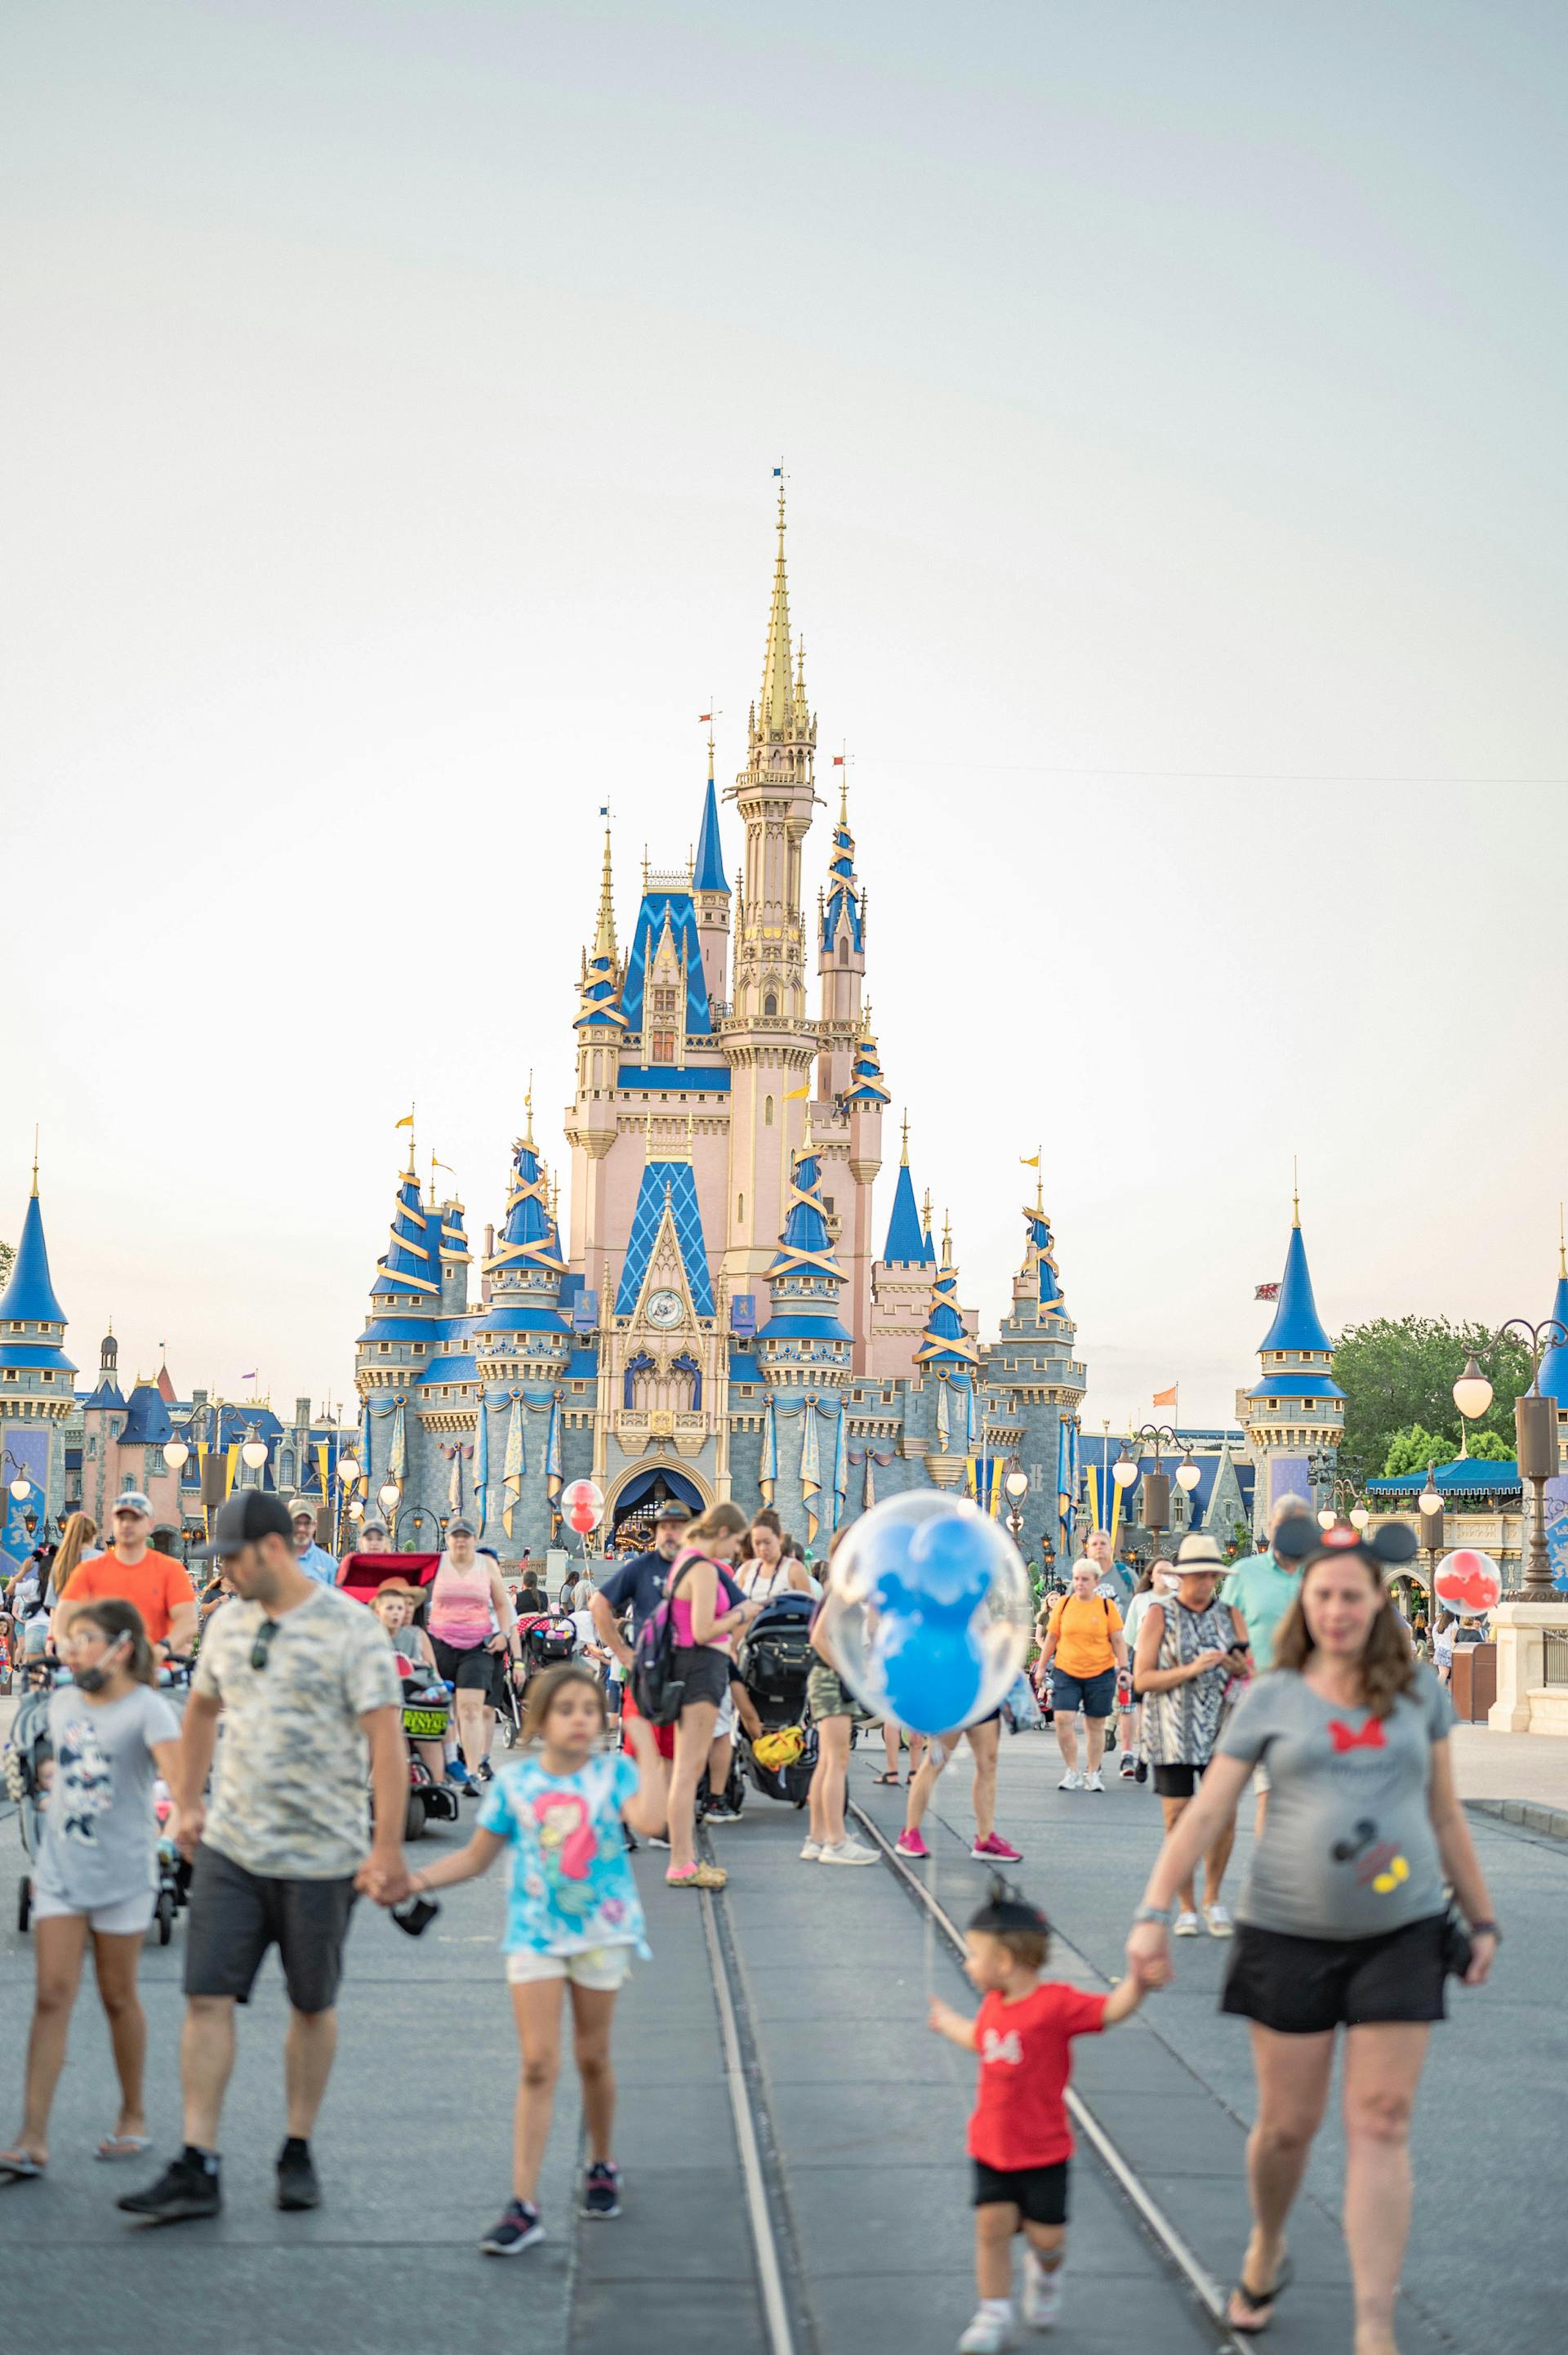 Menschen, die in der Nähe eines Disney-Schlosses spazieren gehen | Quelle: Pexels